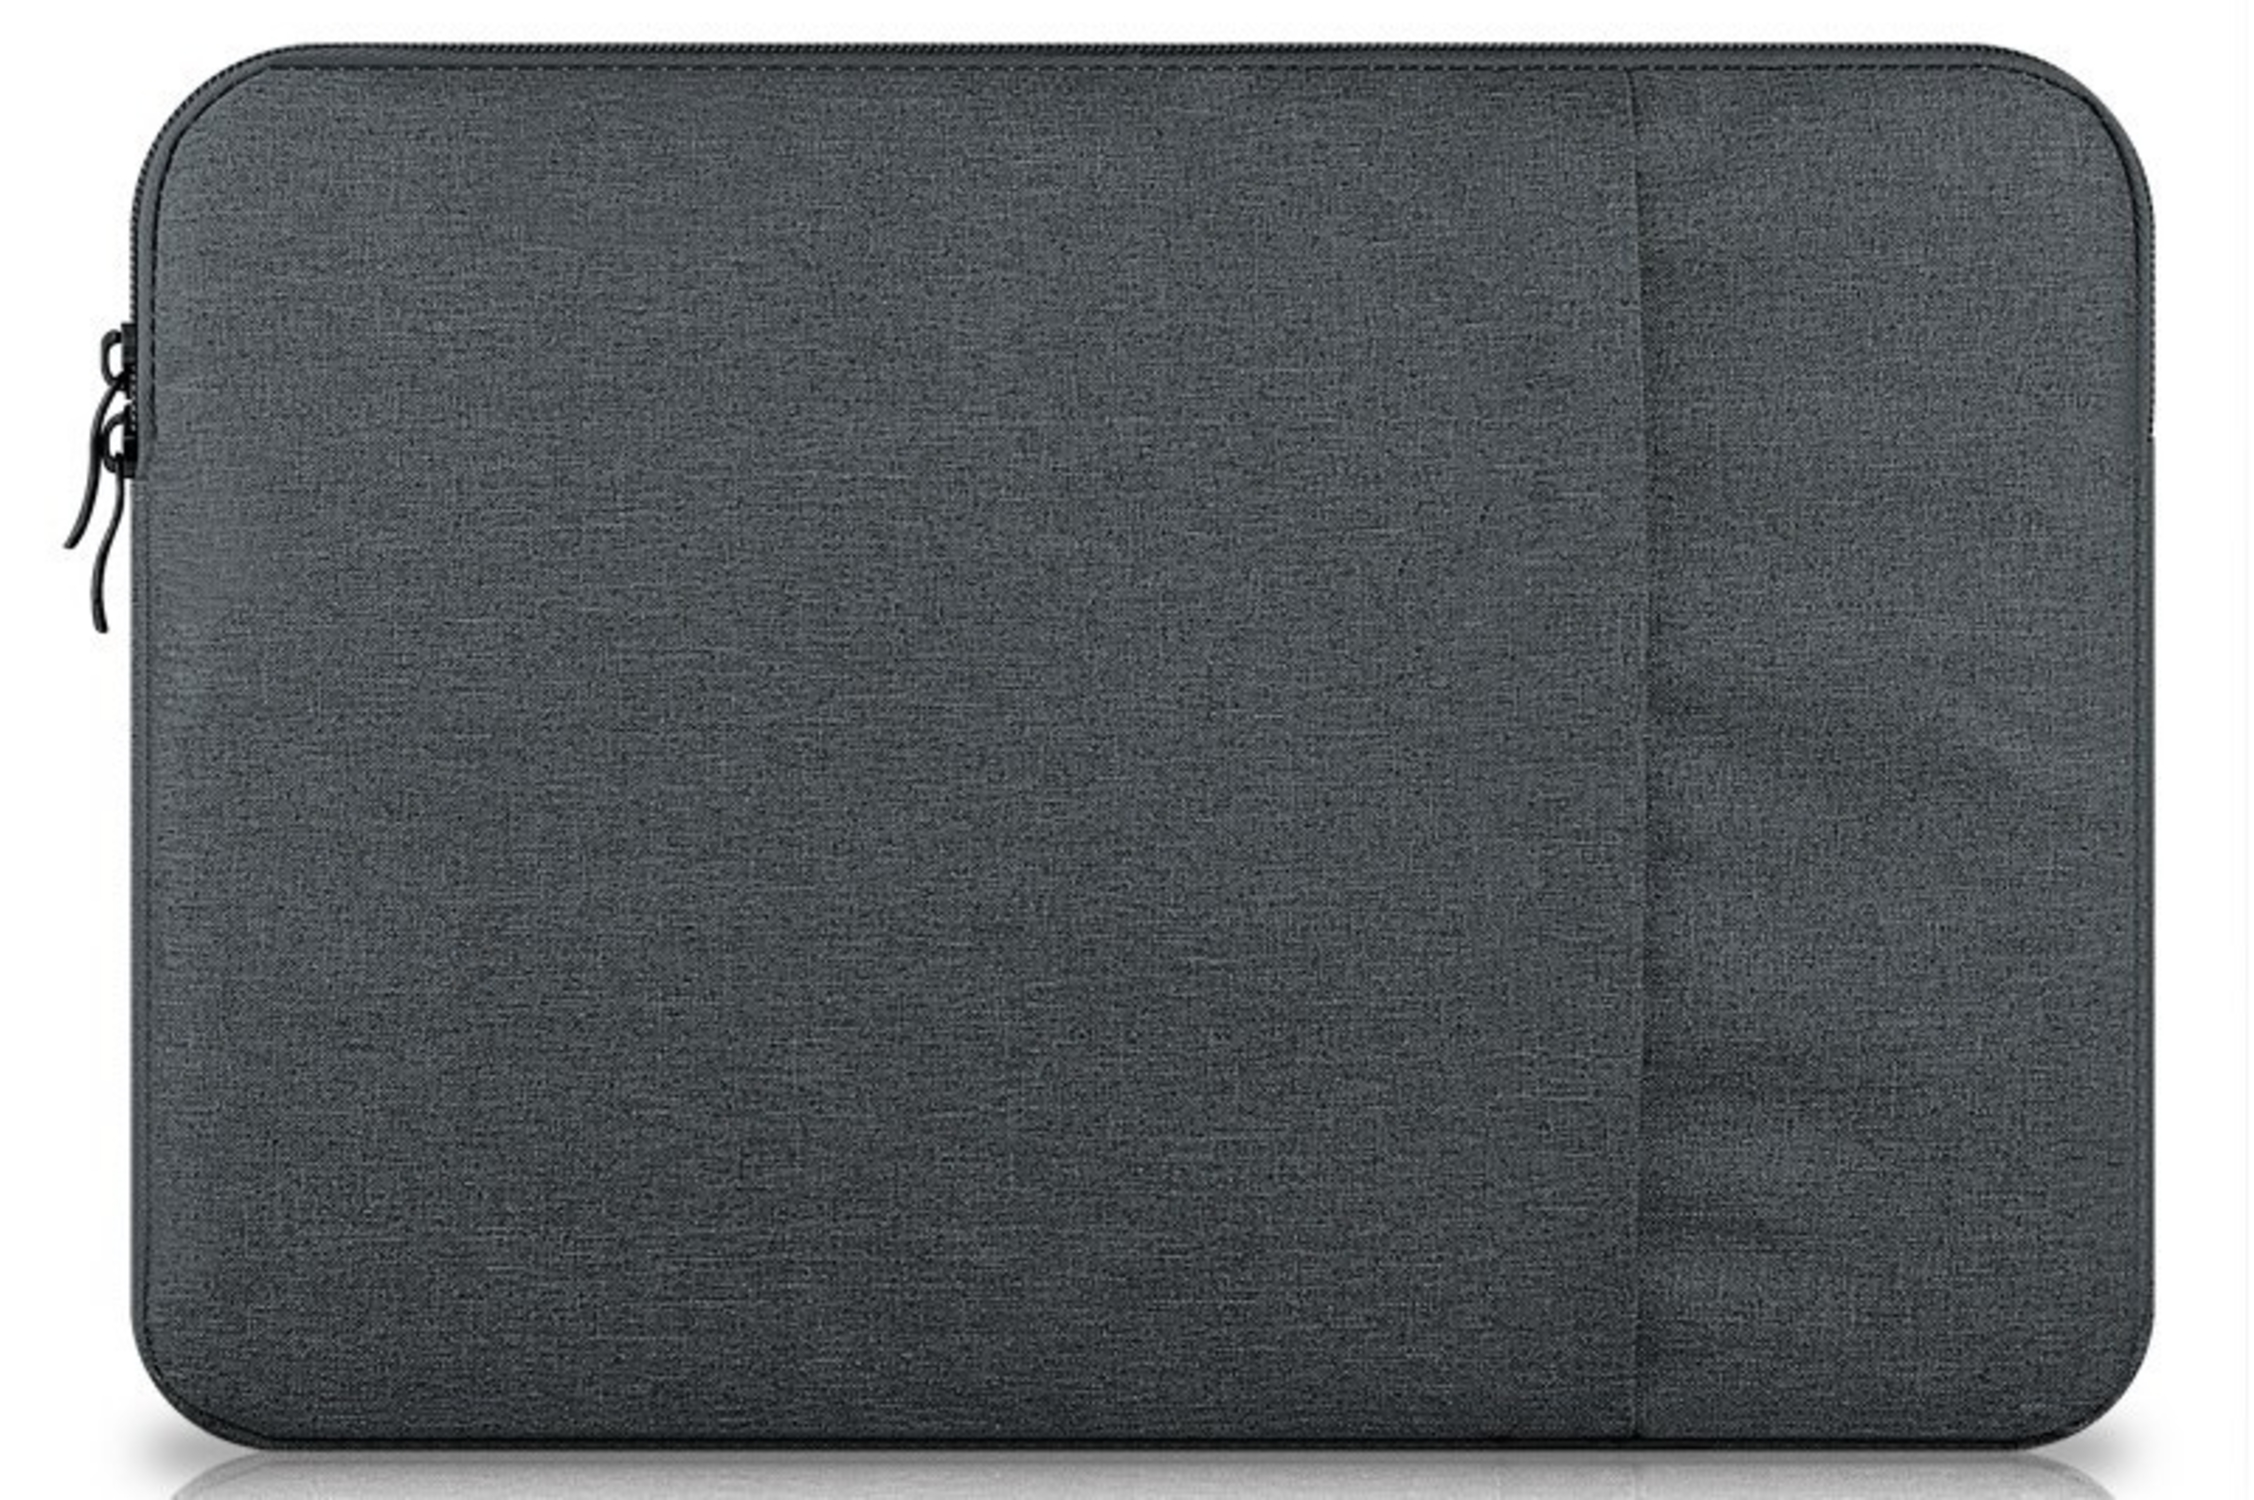 für Notebook HBASICS Notebooksleeve Laptop Laptop für Kunstoff, Tasche 15 Zoll Sleeve Grau Dunkel